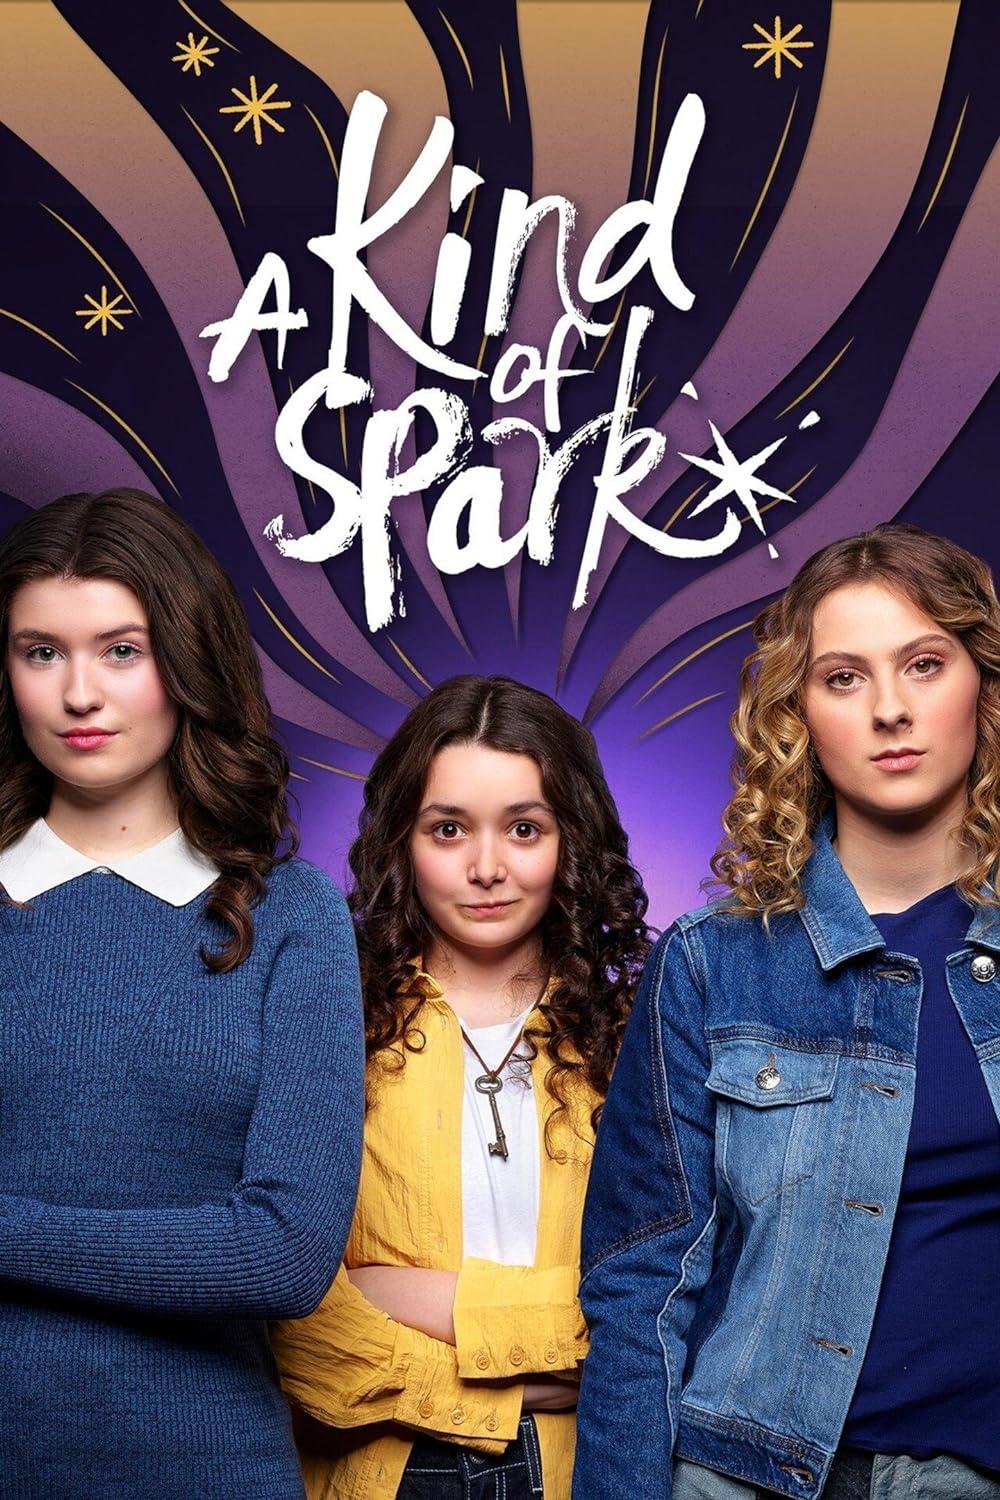 Portada de la serie donde se ve a tres chicas adolescentes.